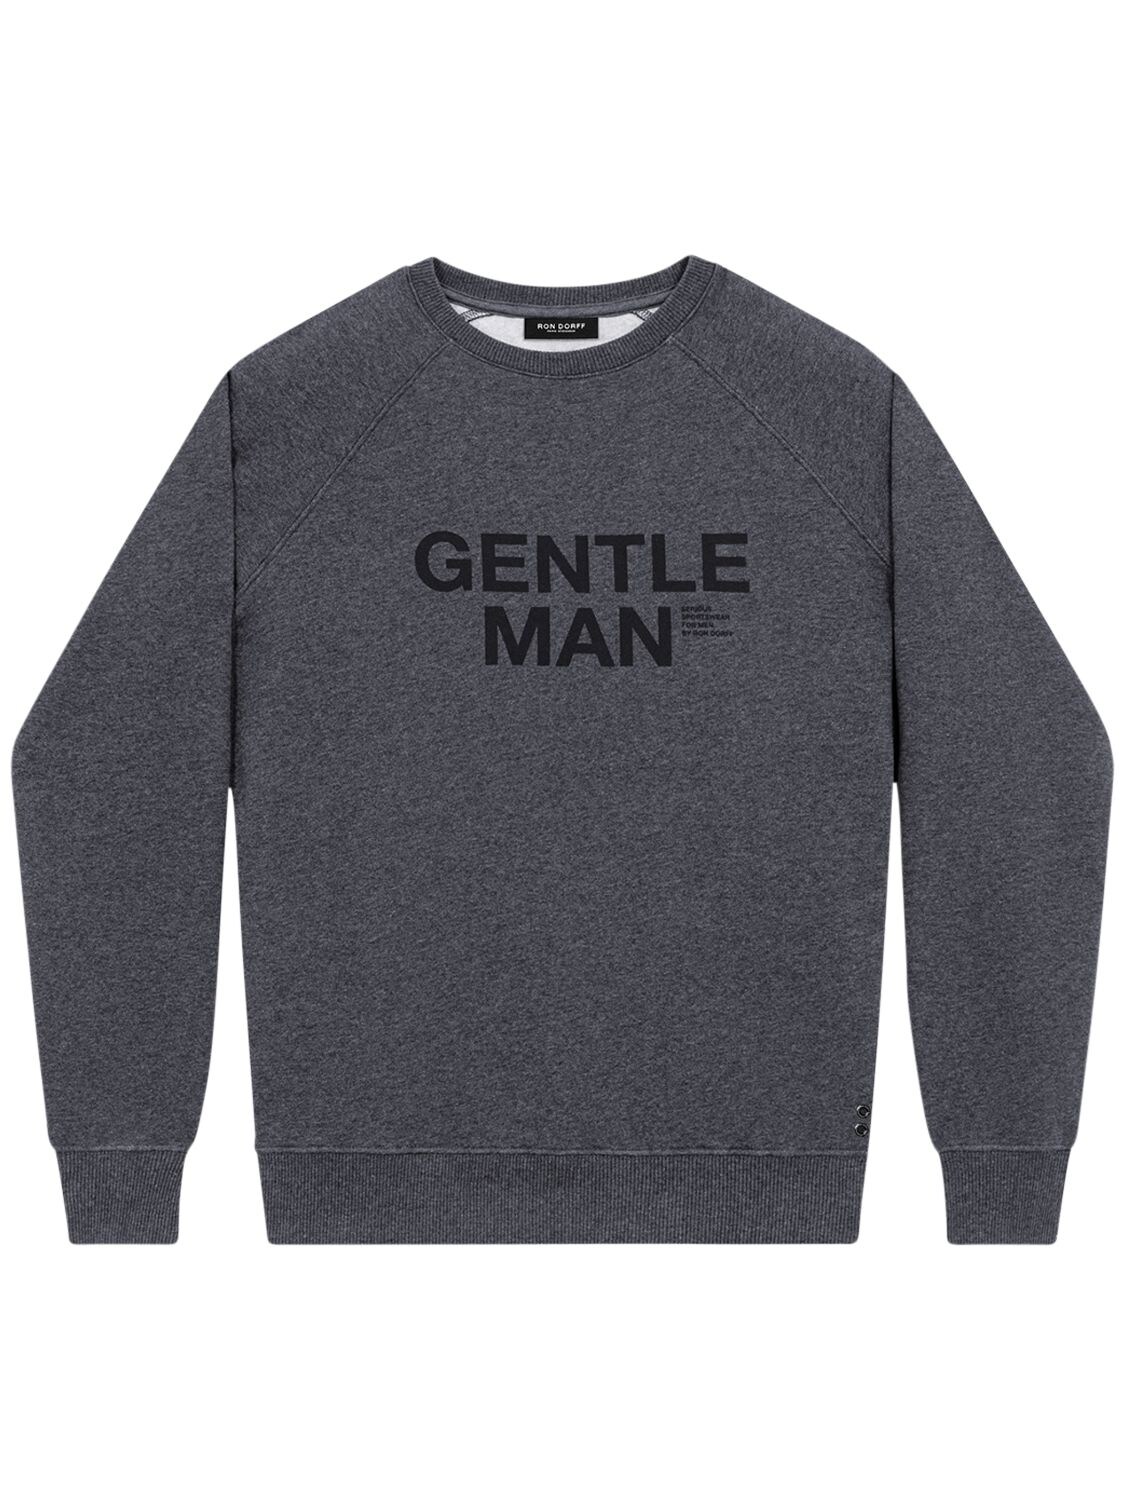 Ron Dorff Gentle Man Print Cotton Blend Sweatshirt In Dark Grey